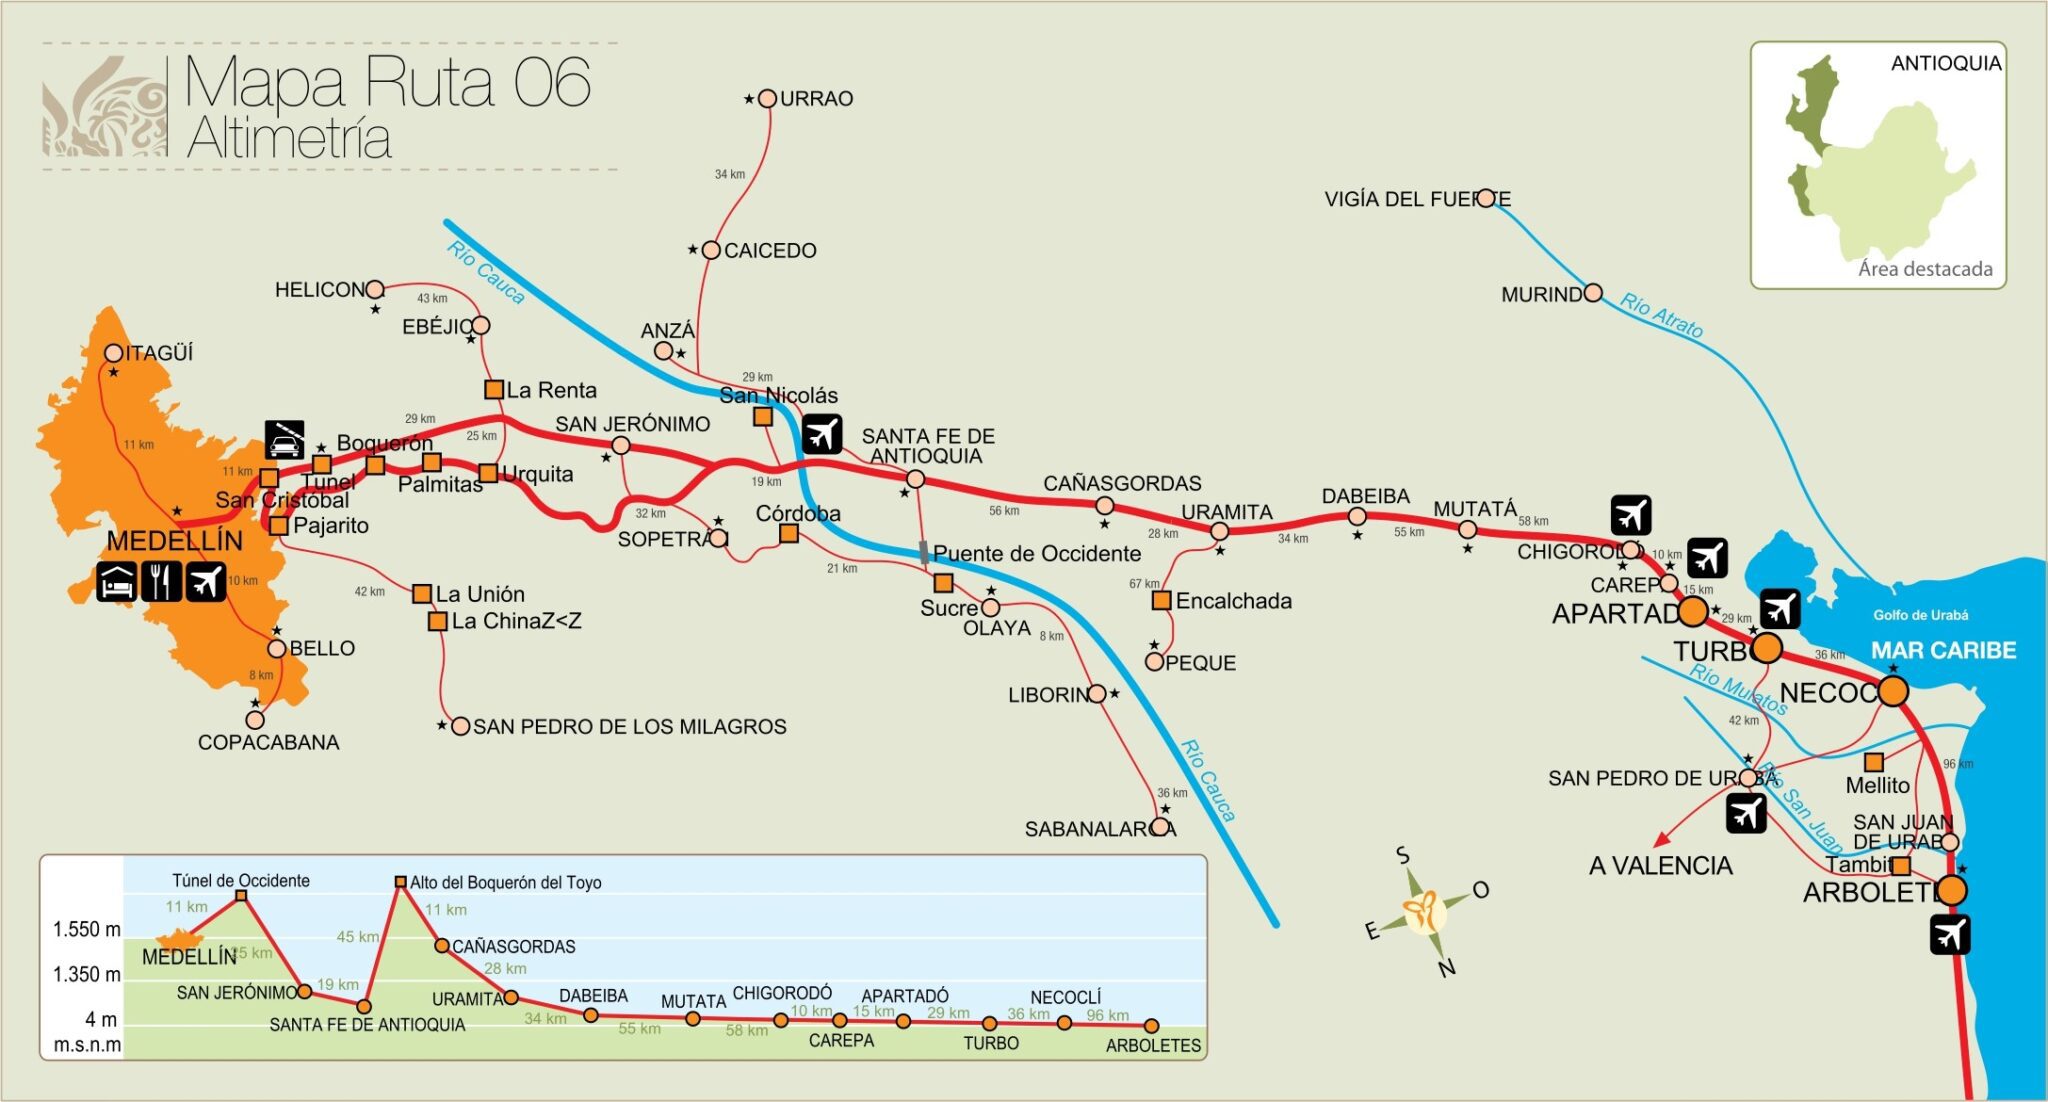 Mapa Ruta Turística al mar de Antioquia, alegrías, riqueza